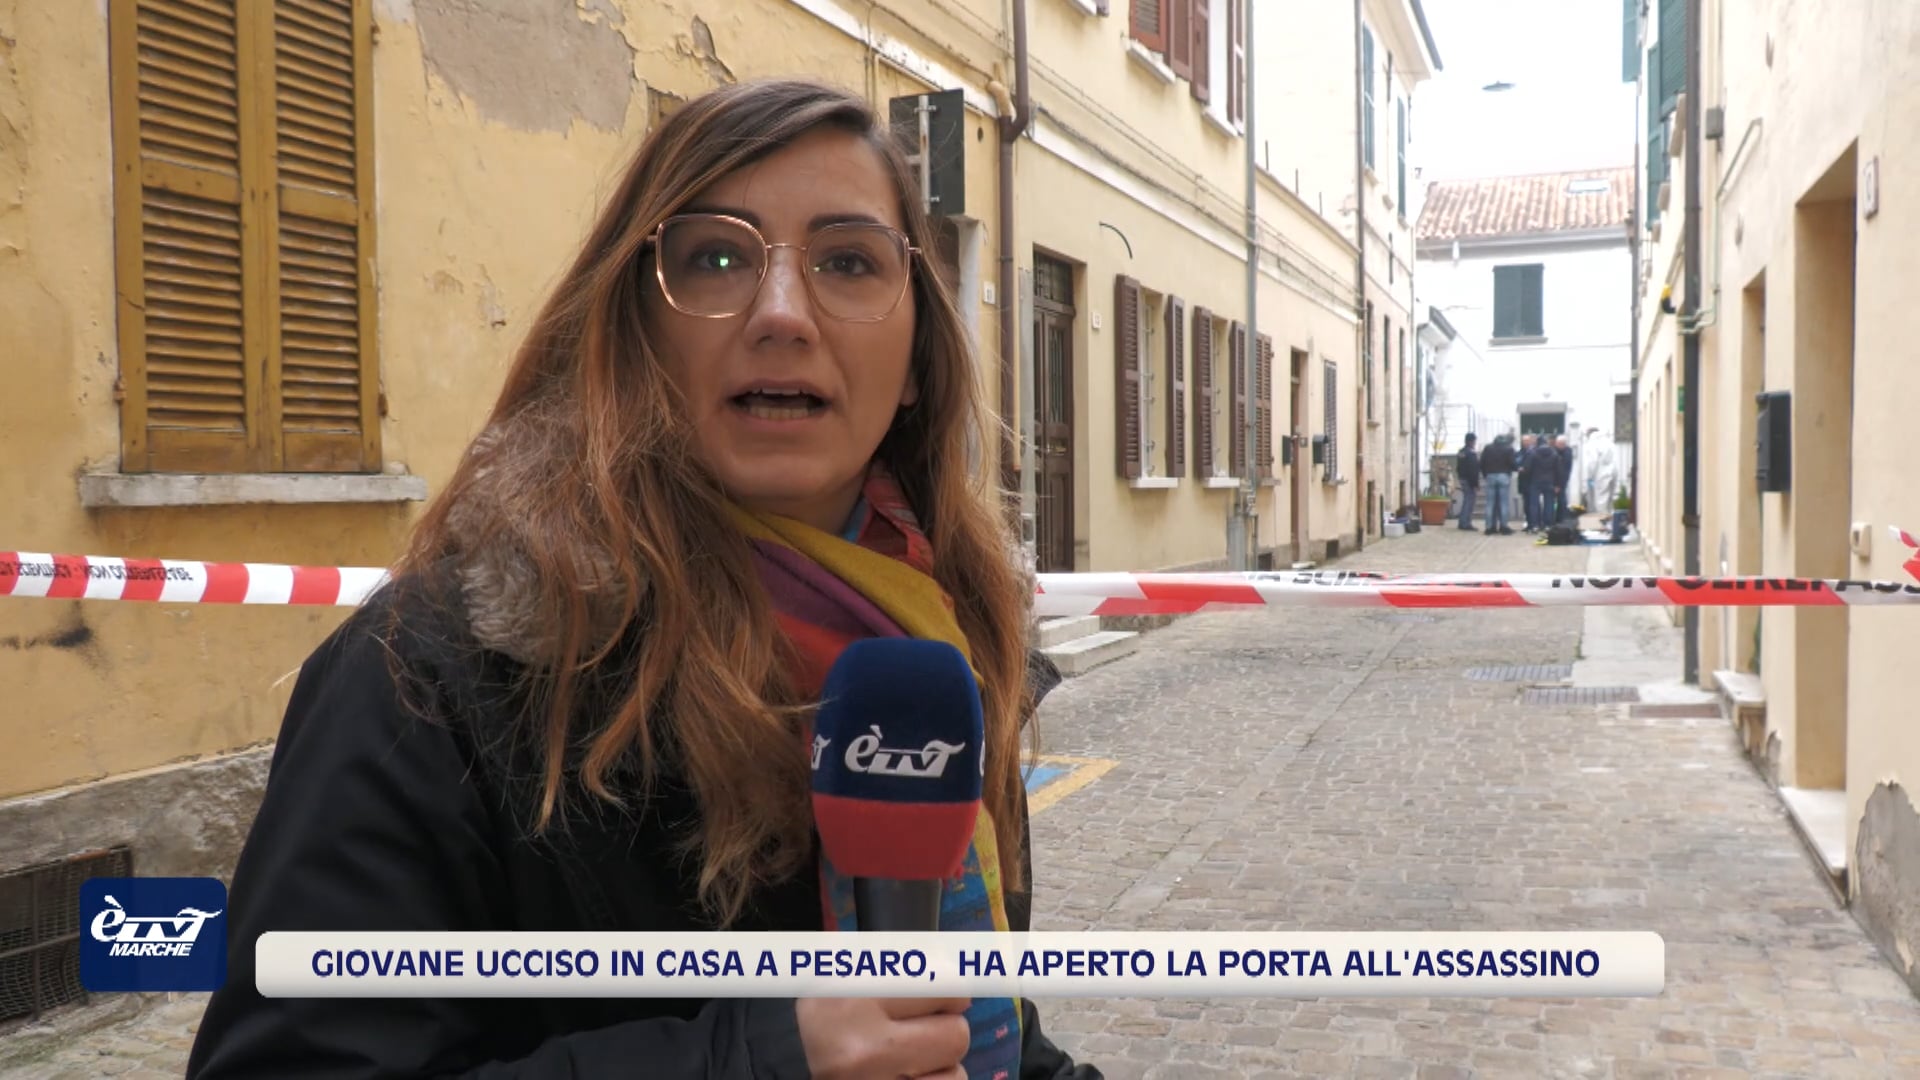 Giovane ucciso in casa a Pesaro, ha aperto la porta all'assassino. La vittima è il 27enne Pierpaolo Panzieri  - VIDEO